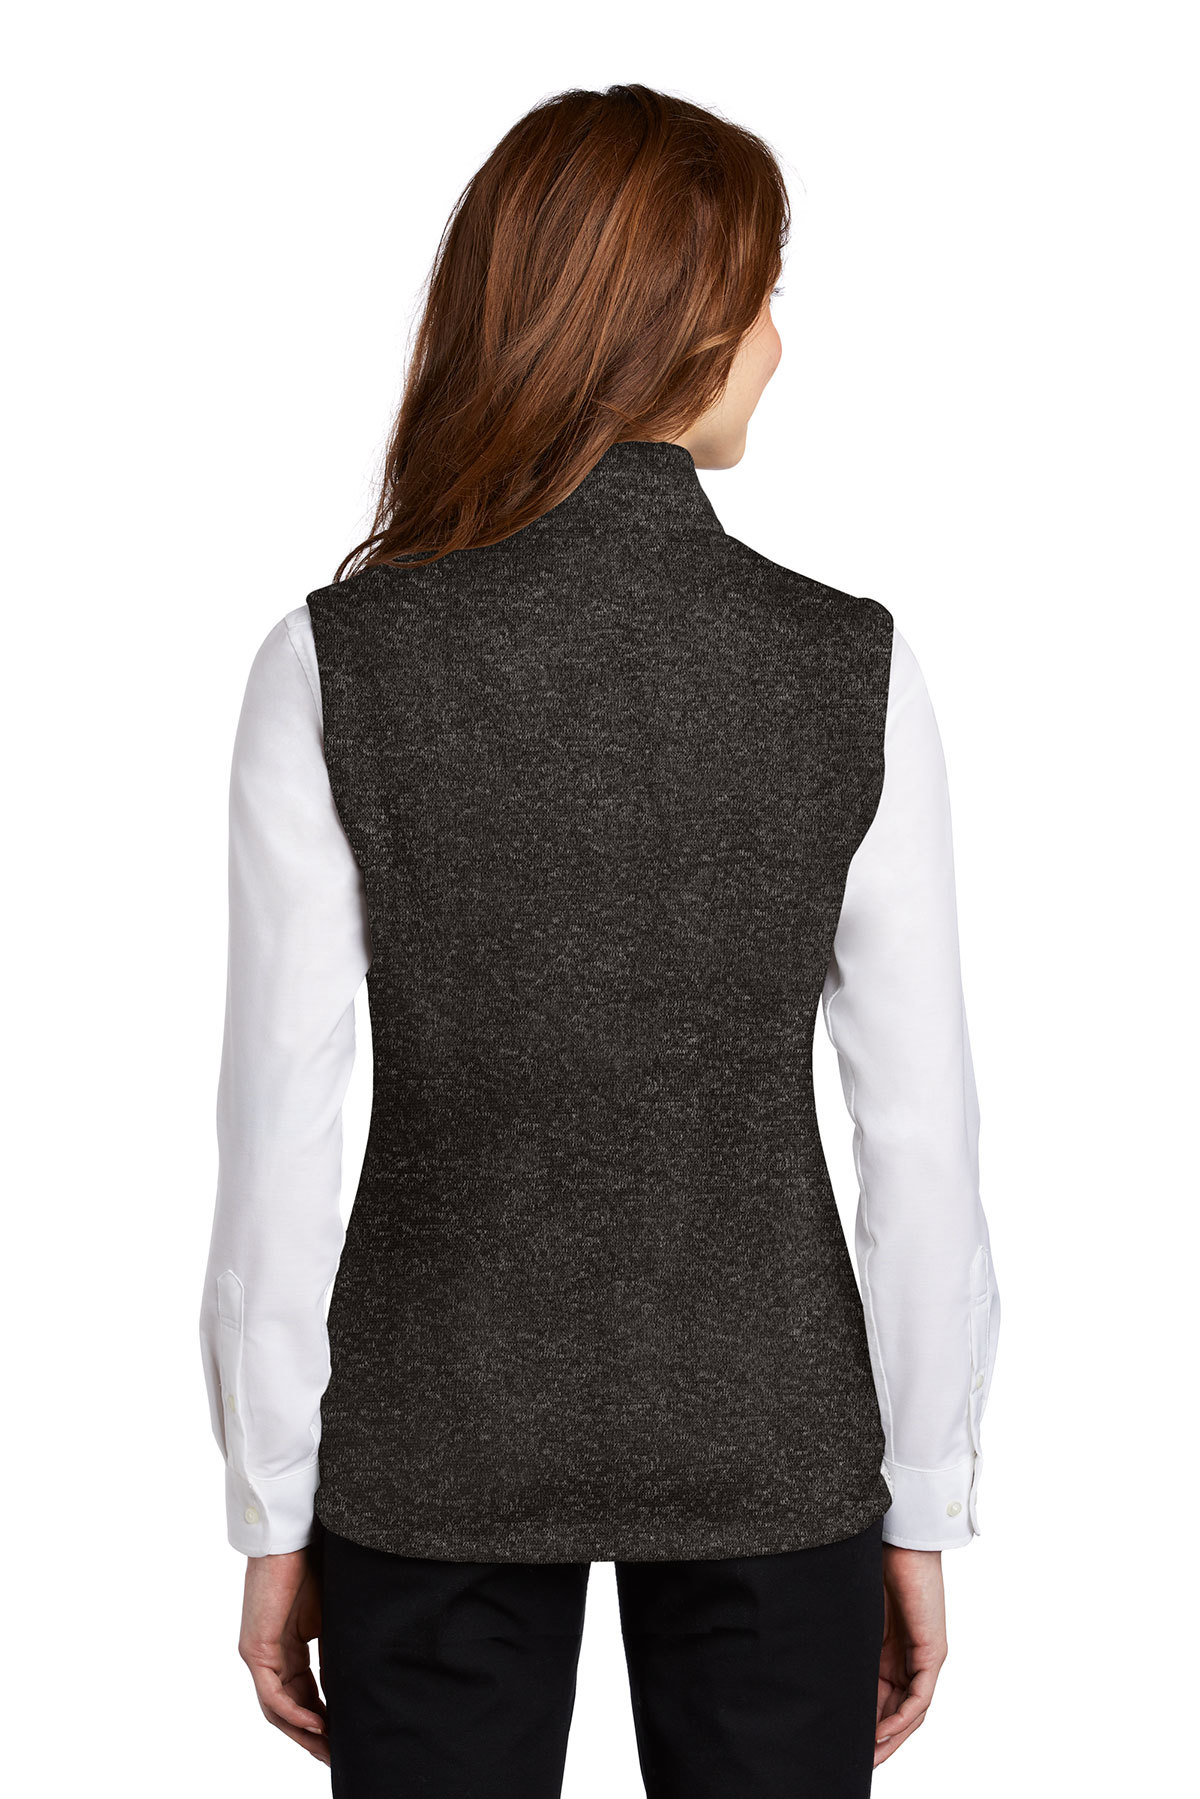 JEA L232 Ladies Unisex Port Authority Sweater Fleece Jacket (Grey Heather)  - Orriginals